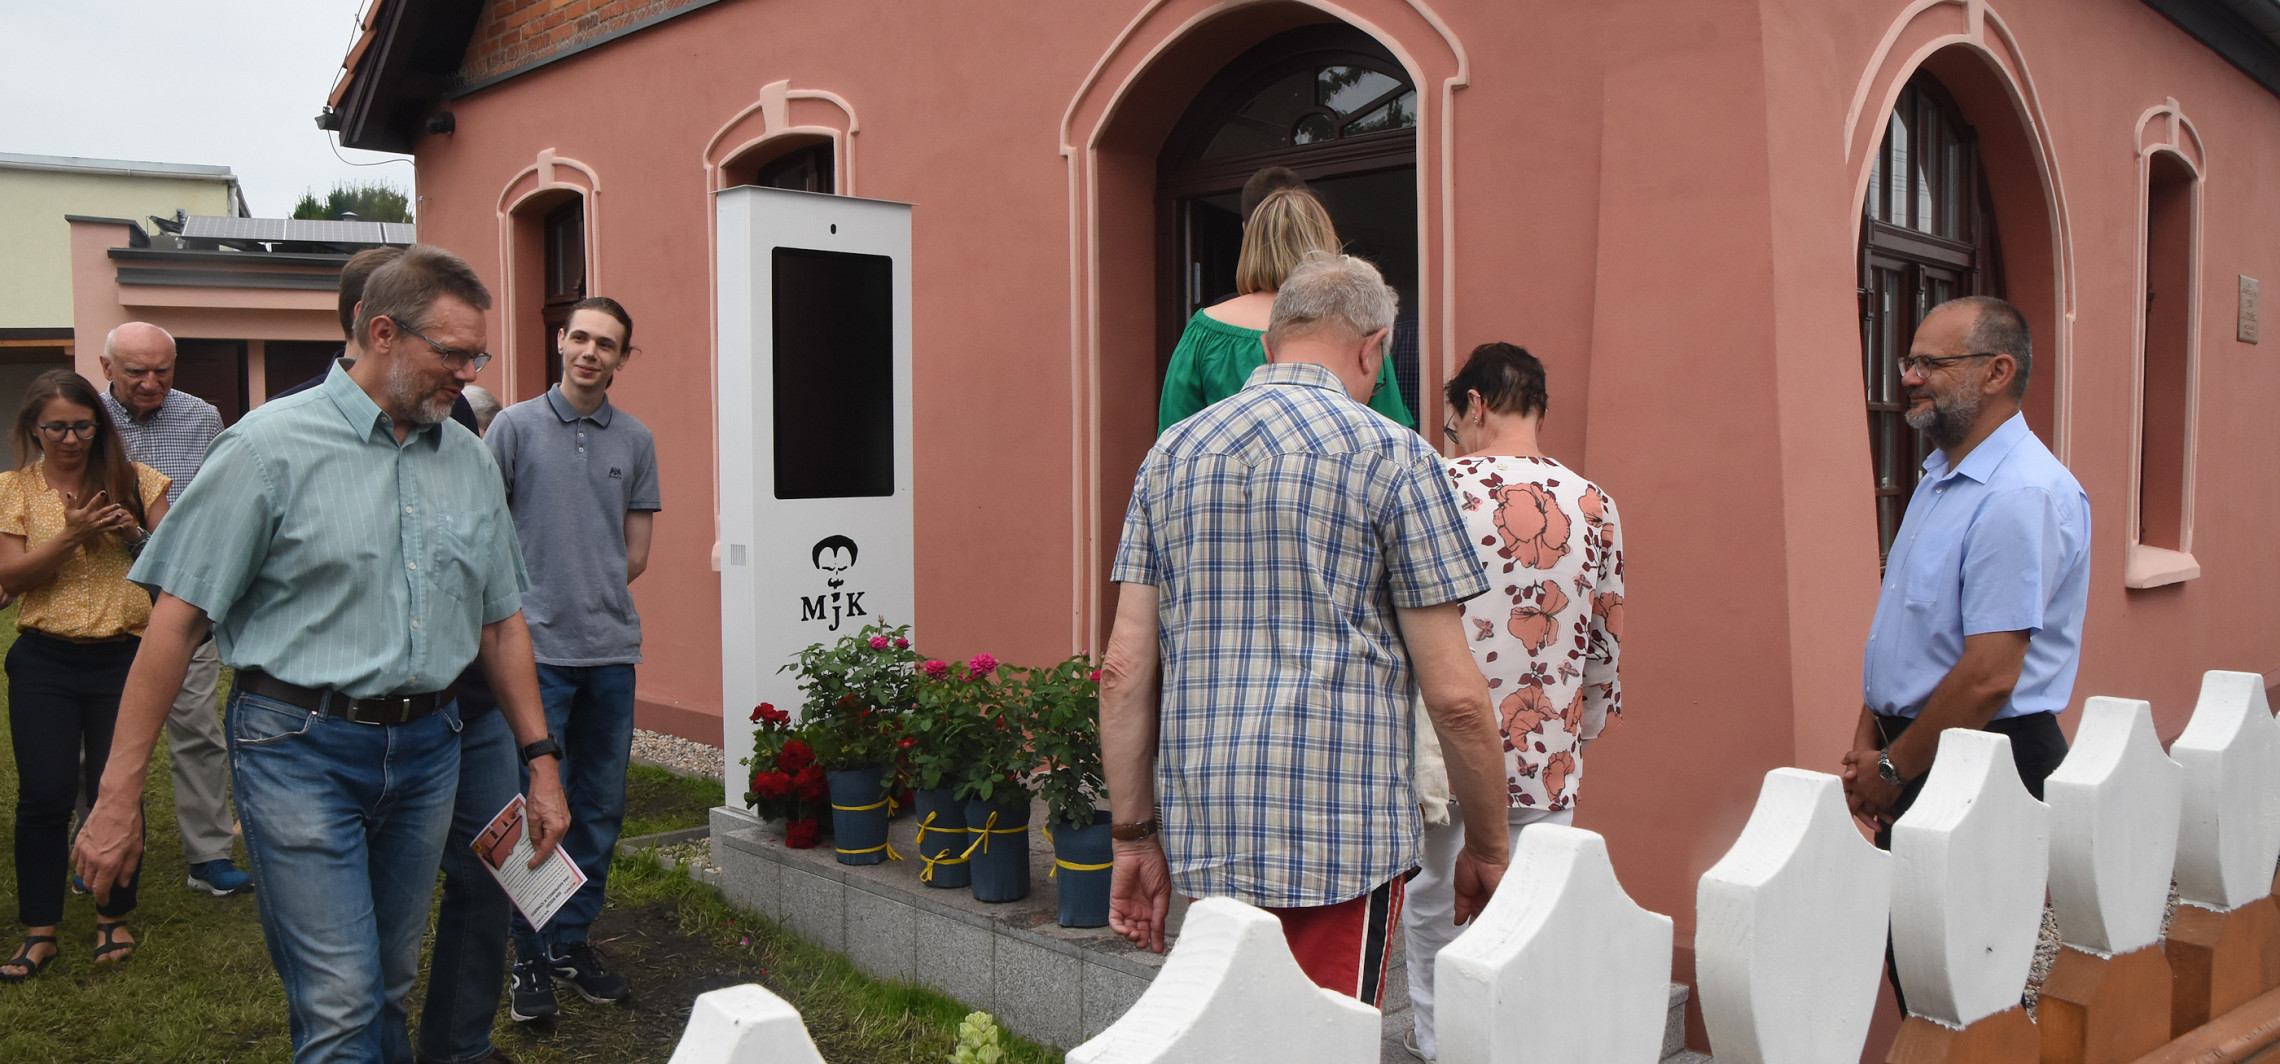 Inowrocław - Otwarto drzwi do rodzinnego domu poety z Szymborza